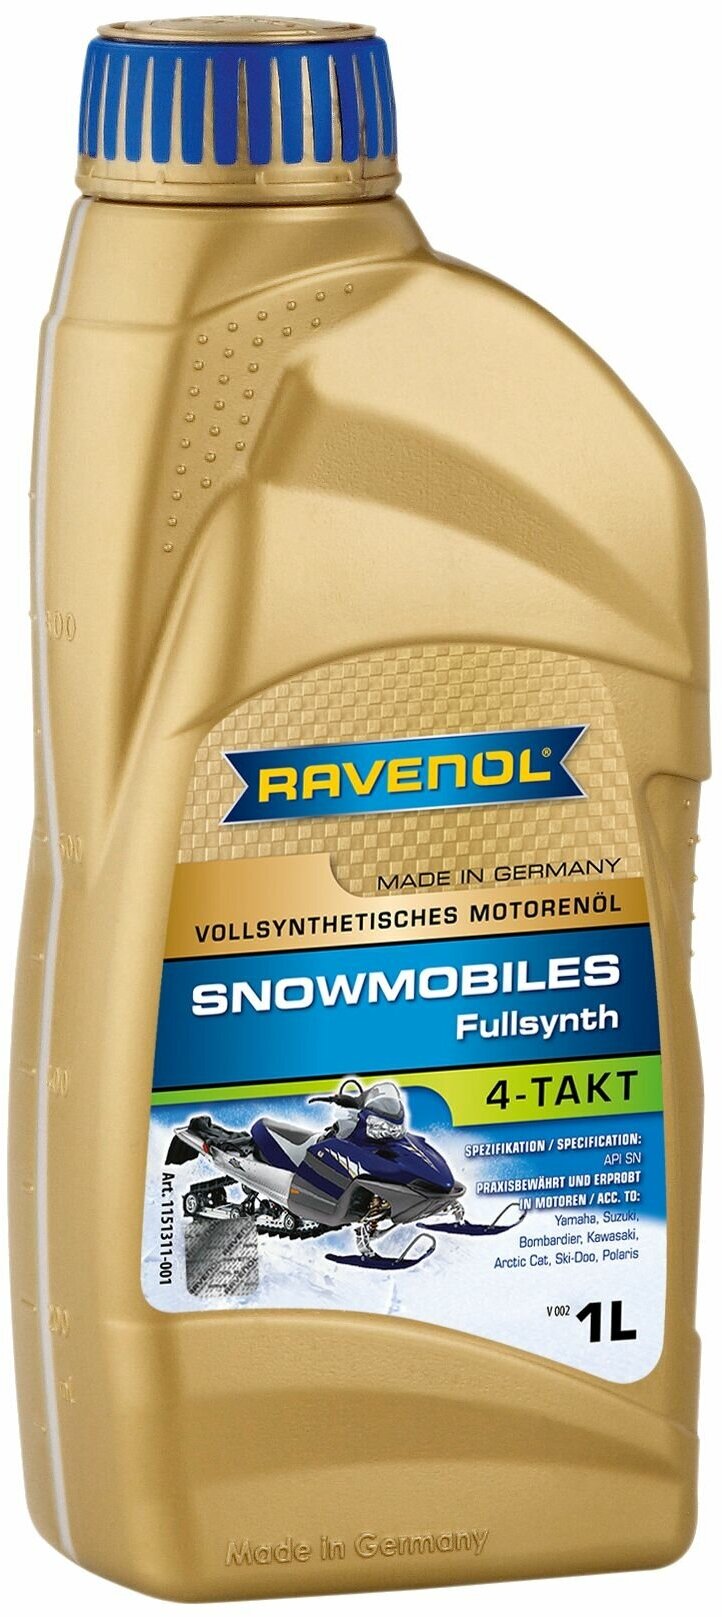 Масло для 4-Такт снегоходов RAVENOL Snowmobiles 4-Takt Fullsynth. (1л) new